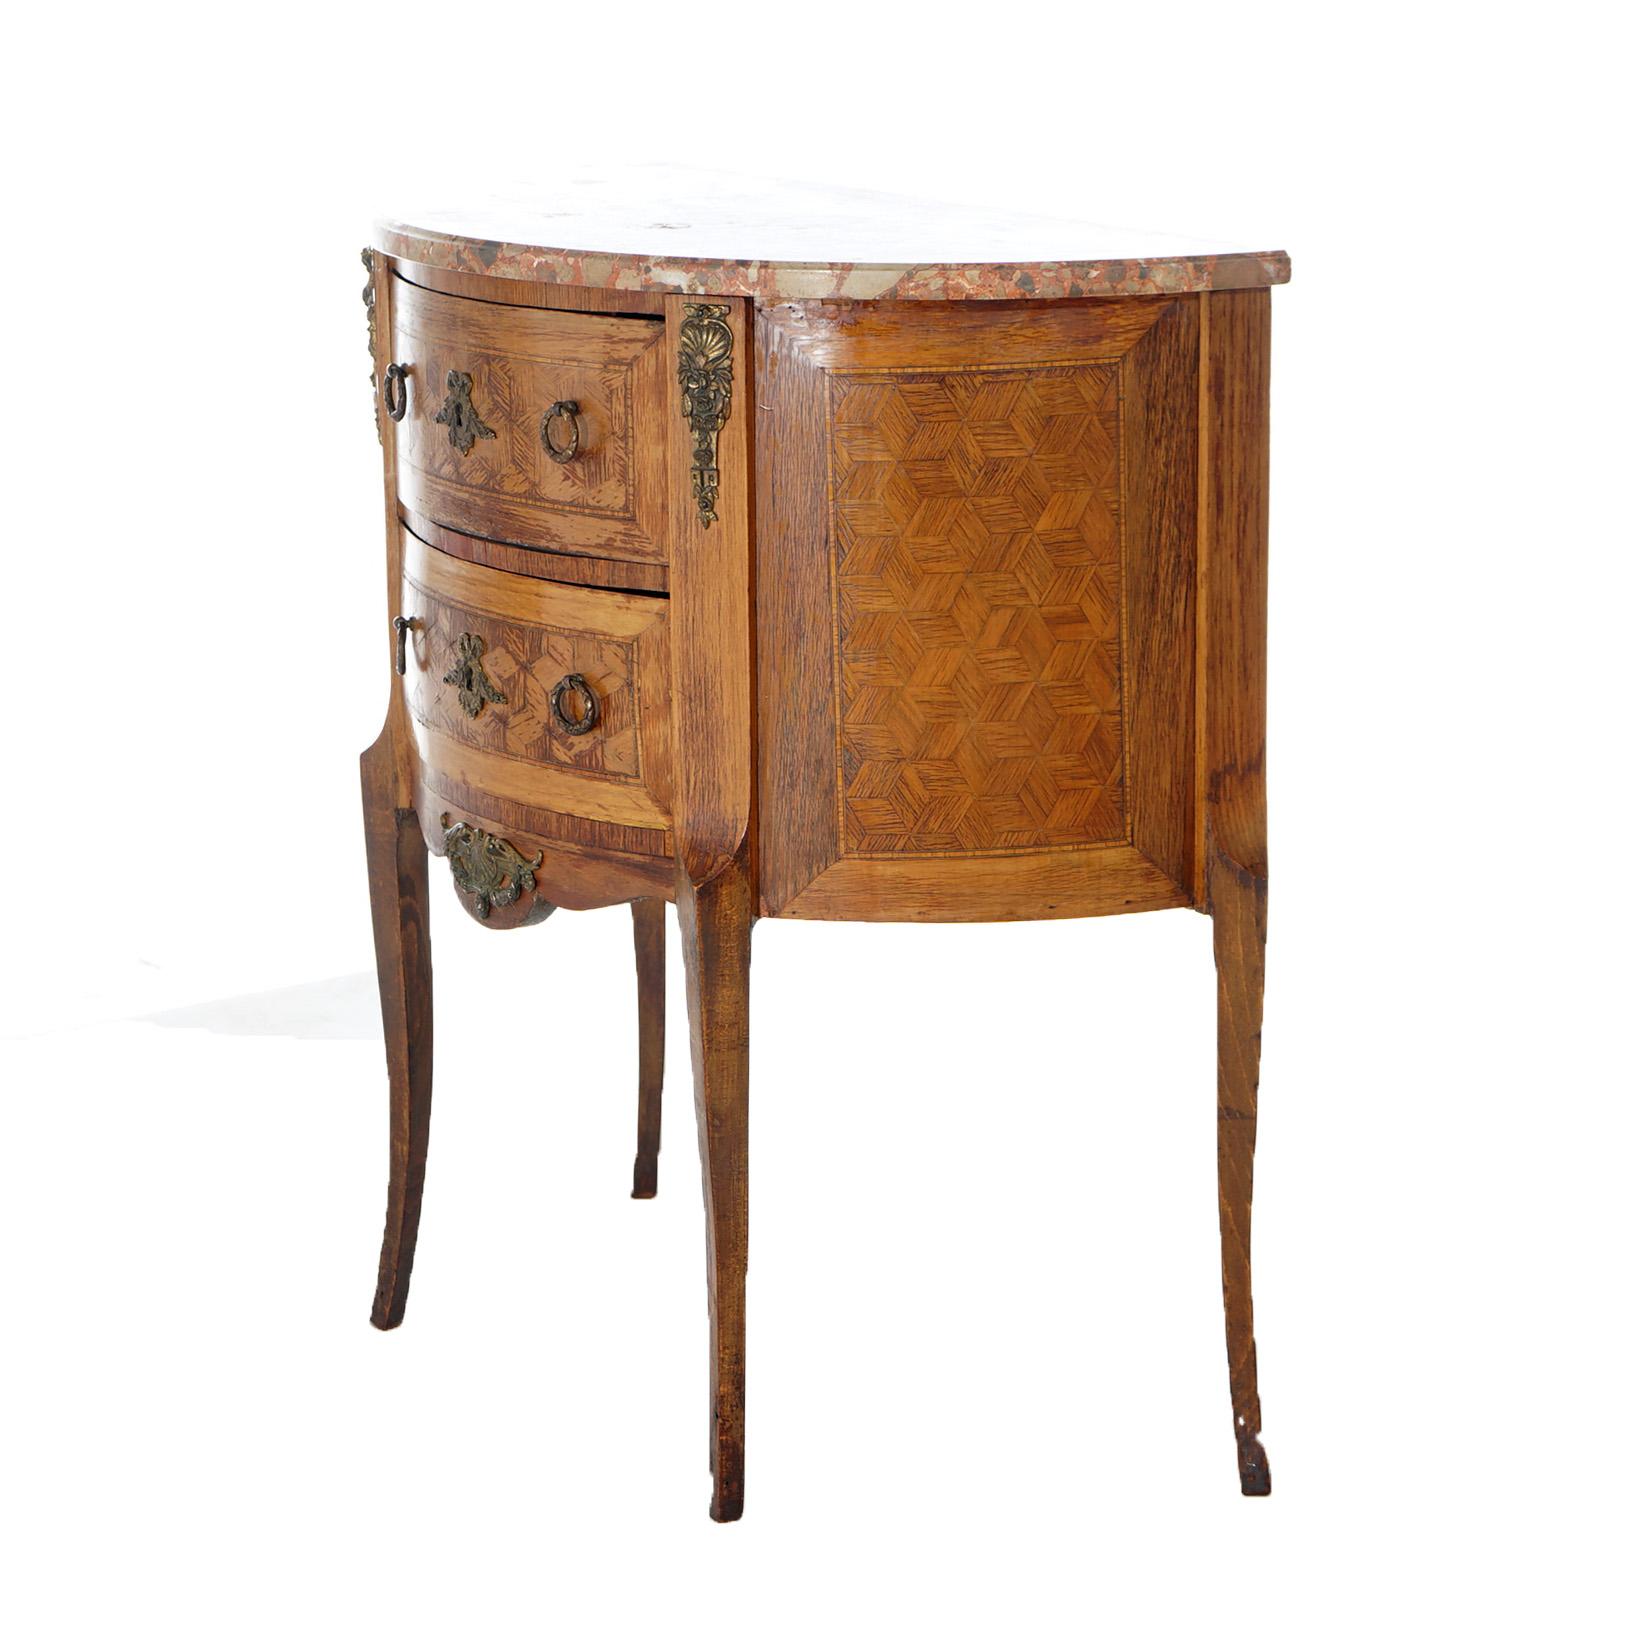 AntiqueFrench Demilune Kingwood, Satinwood & Spécimen Marble Side Table c1920 For Sale 1